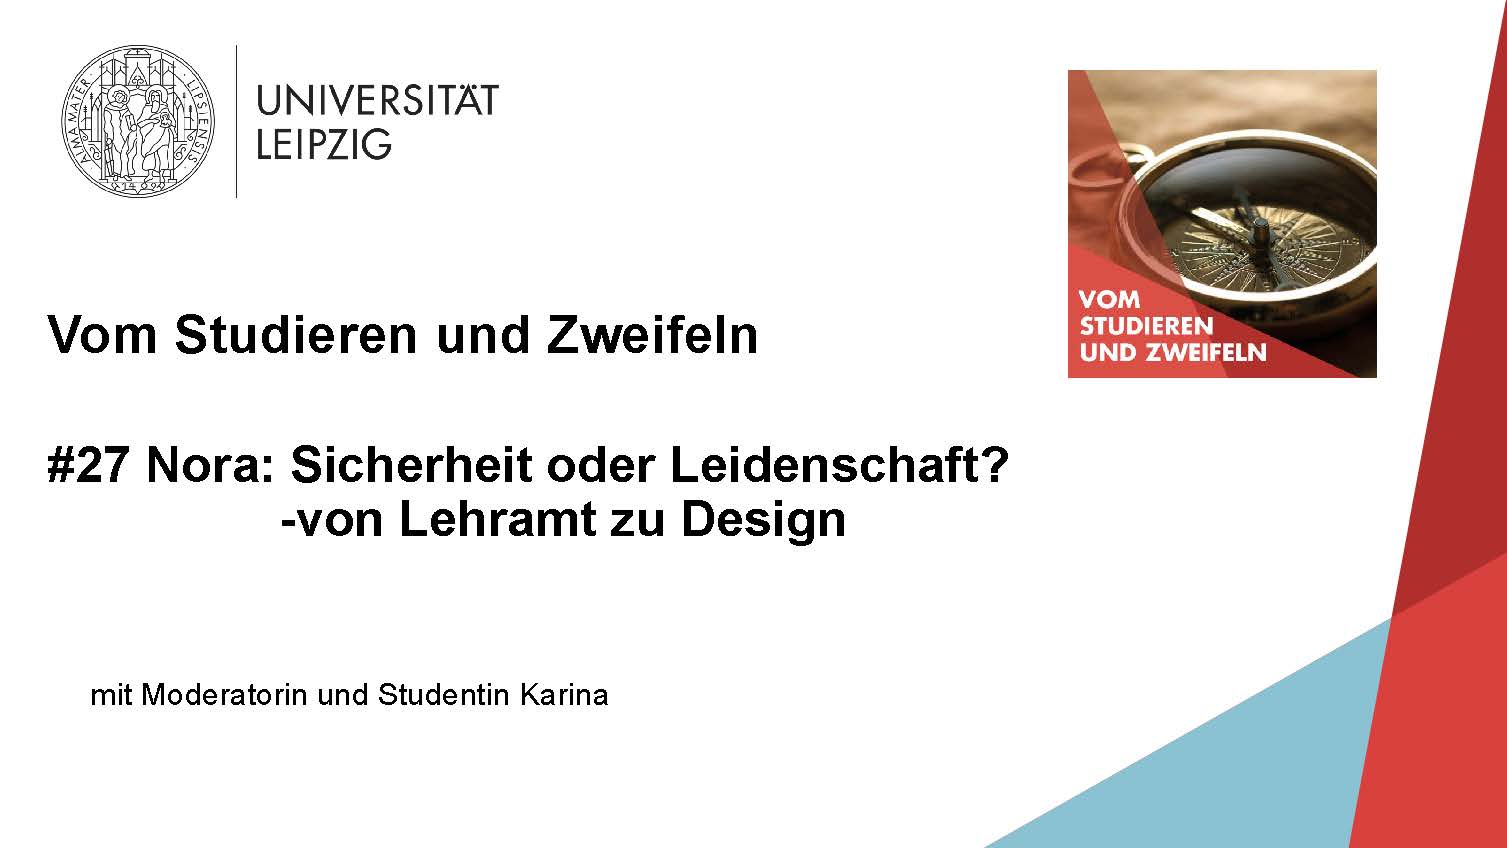 Vorschaubild zum Podcast "Vom Studieren und Zweifeln", Folge 27: Nora: Sicherheit oder Leidenschaft? – von Lehramt zu Design, Grafik: Universität Leipzig